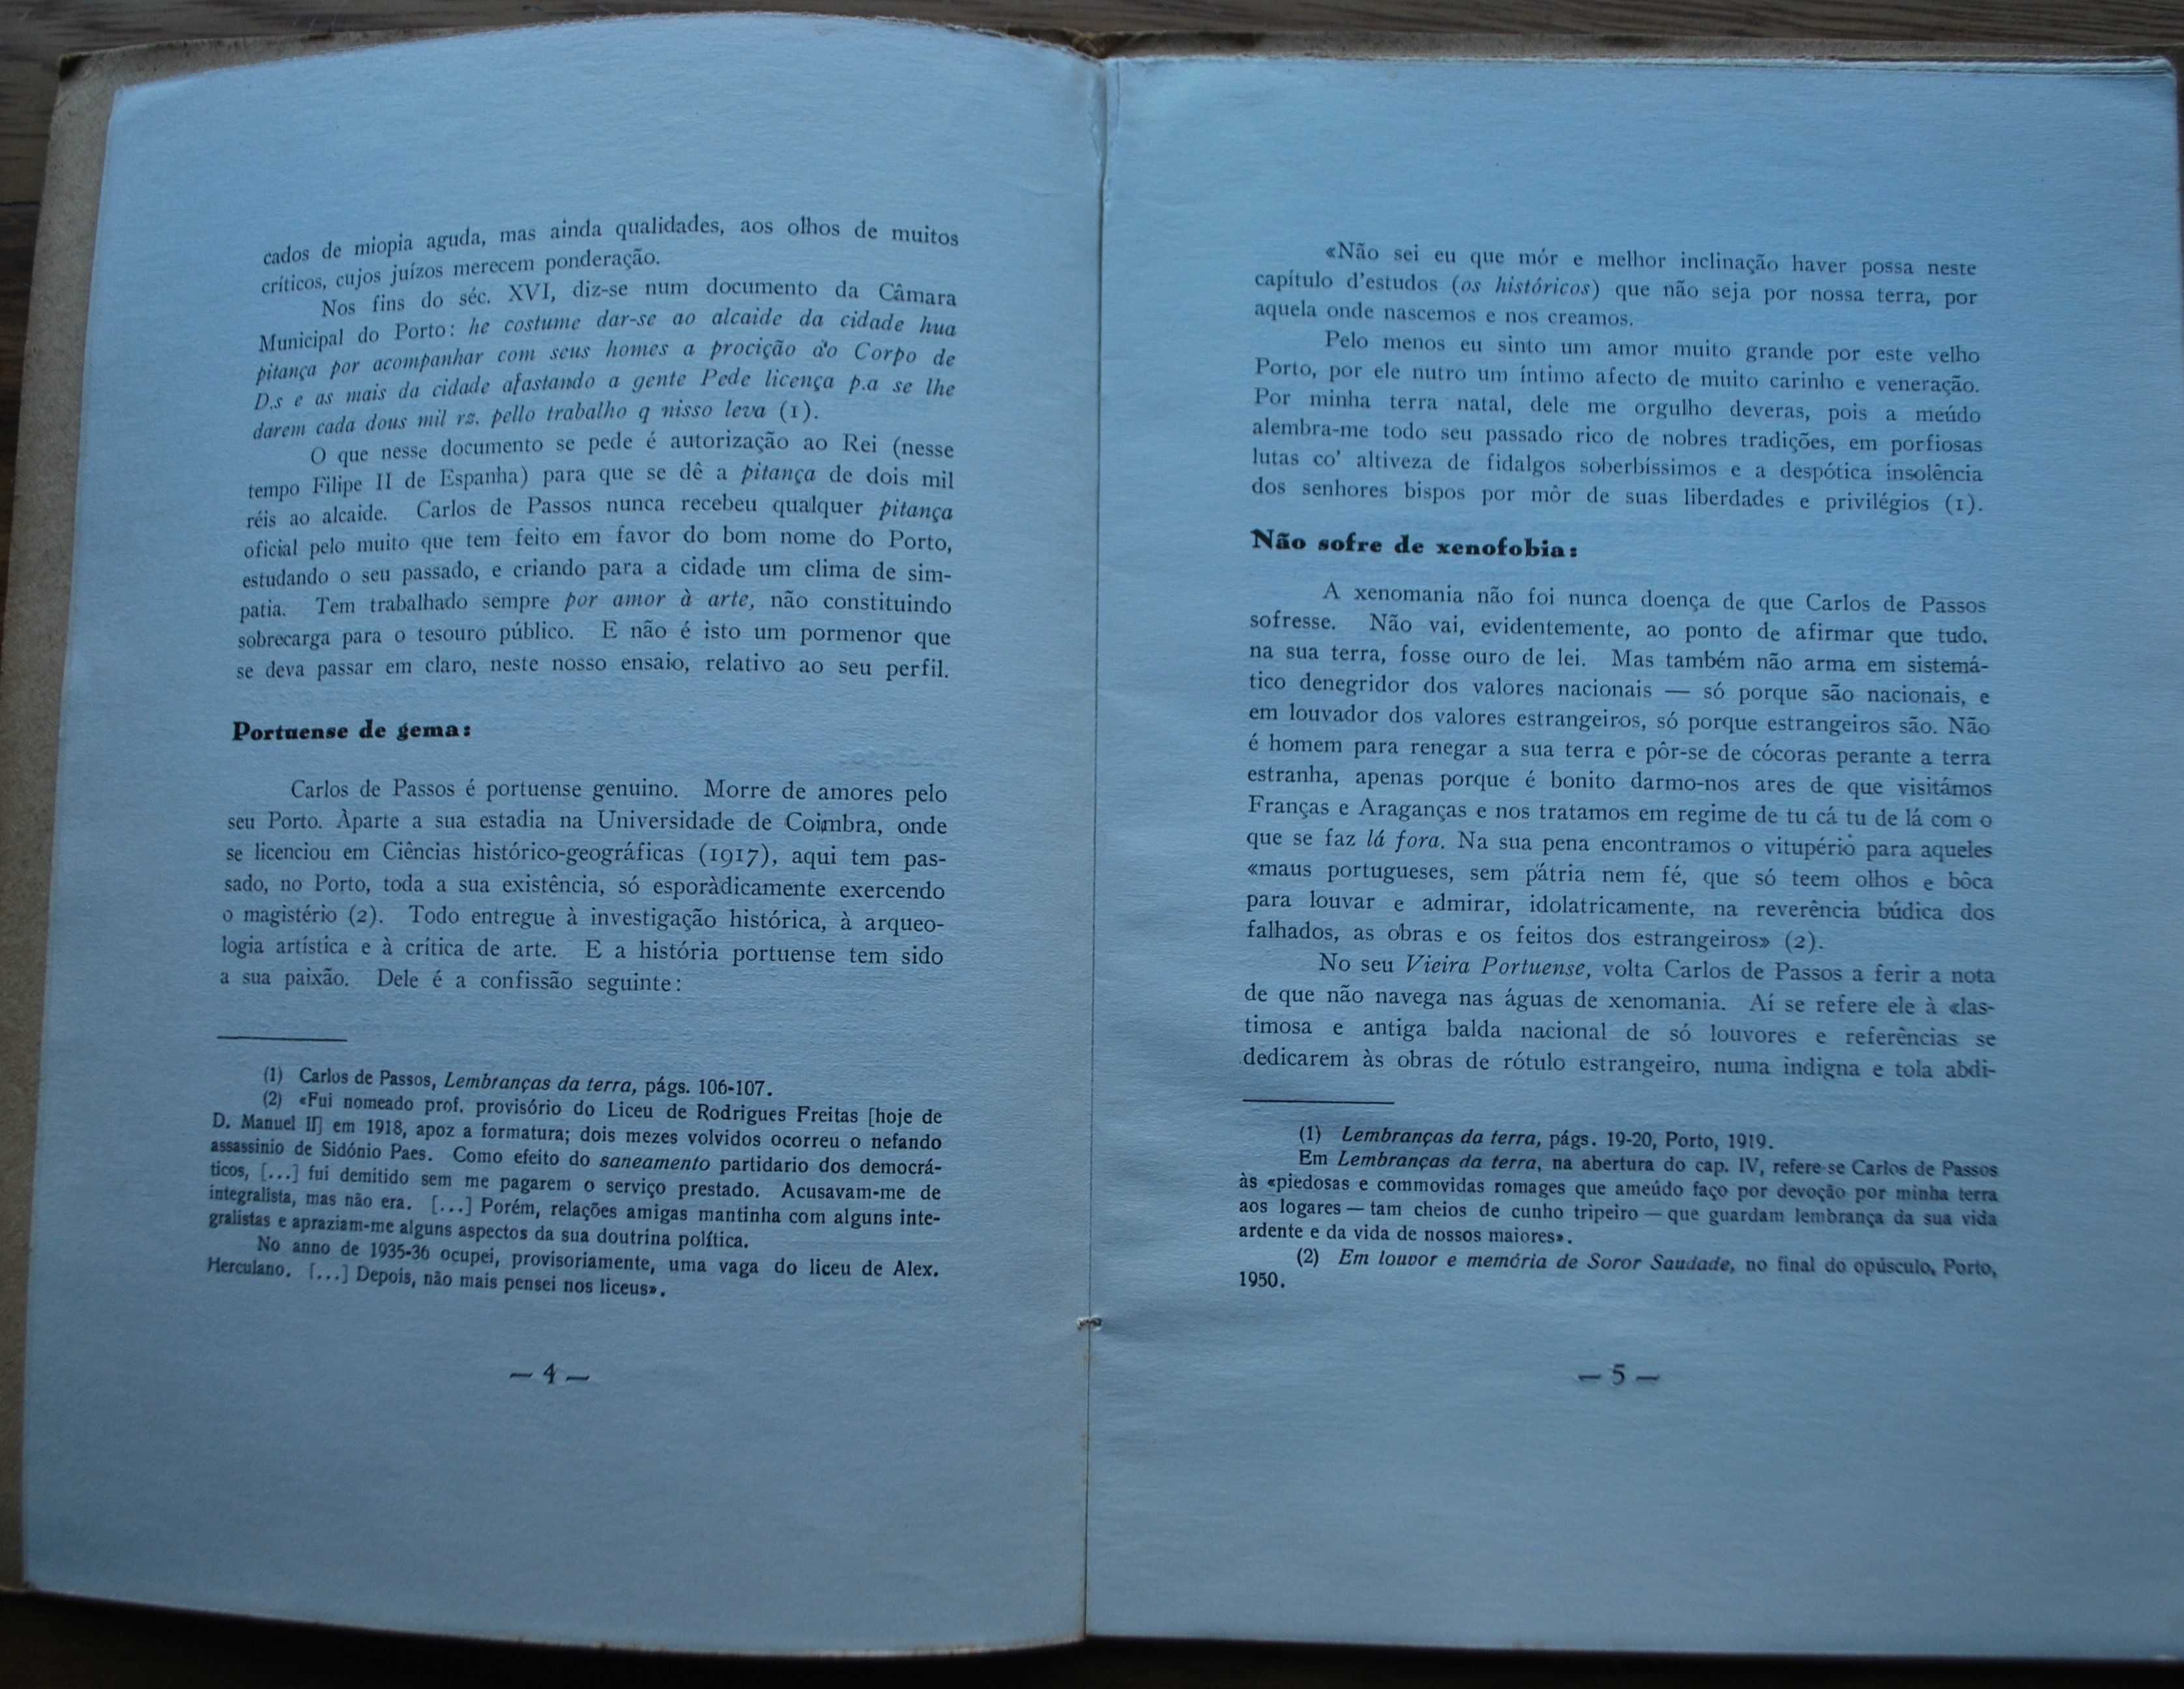 Perfil do Escritor Carlos de Passos - Ano Edição 1958 de Cruz Malpique